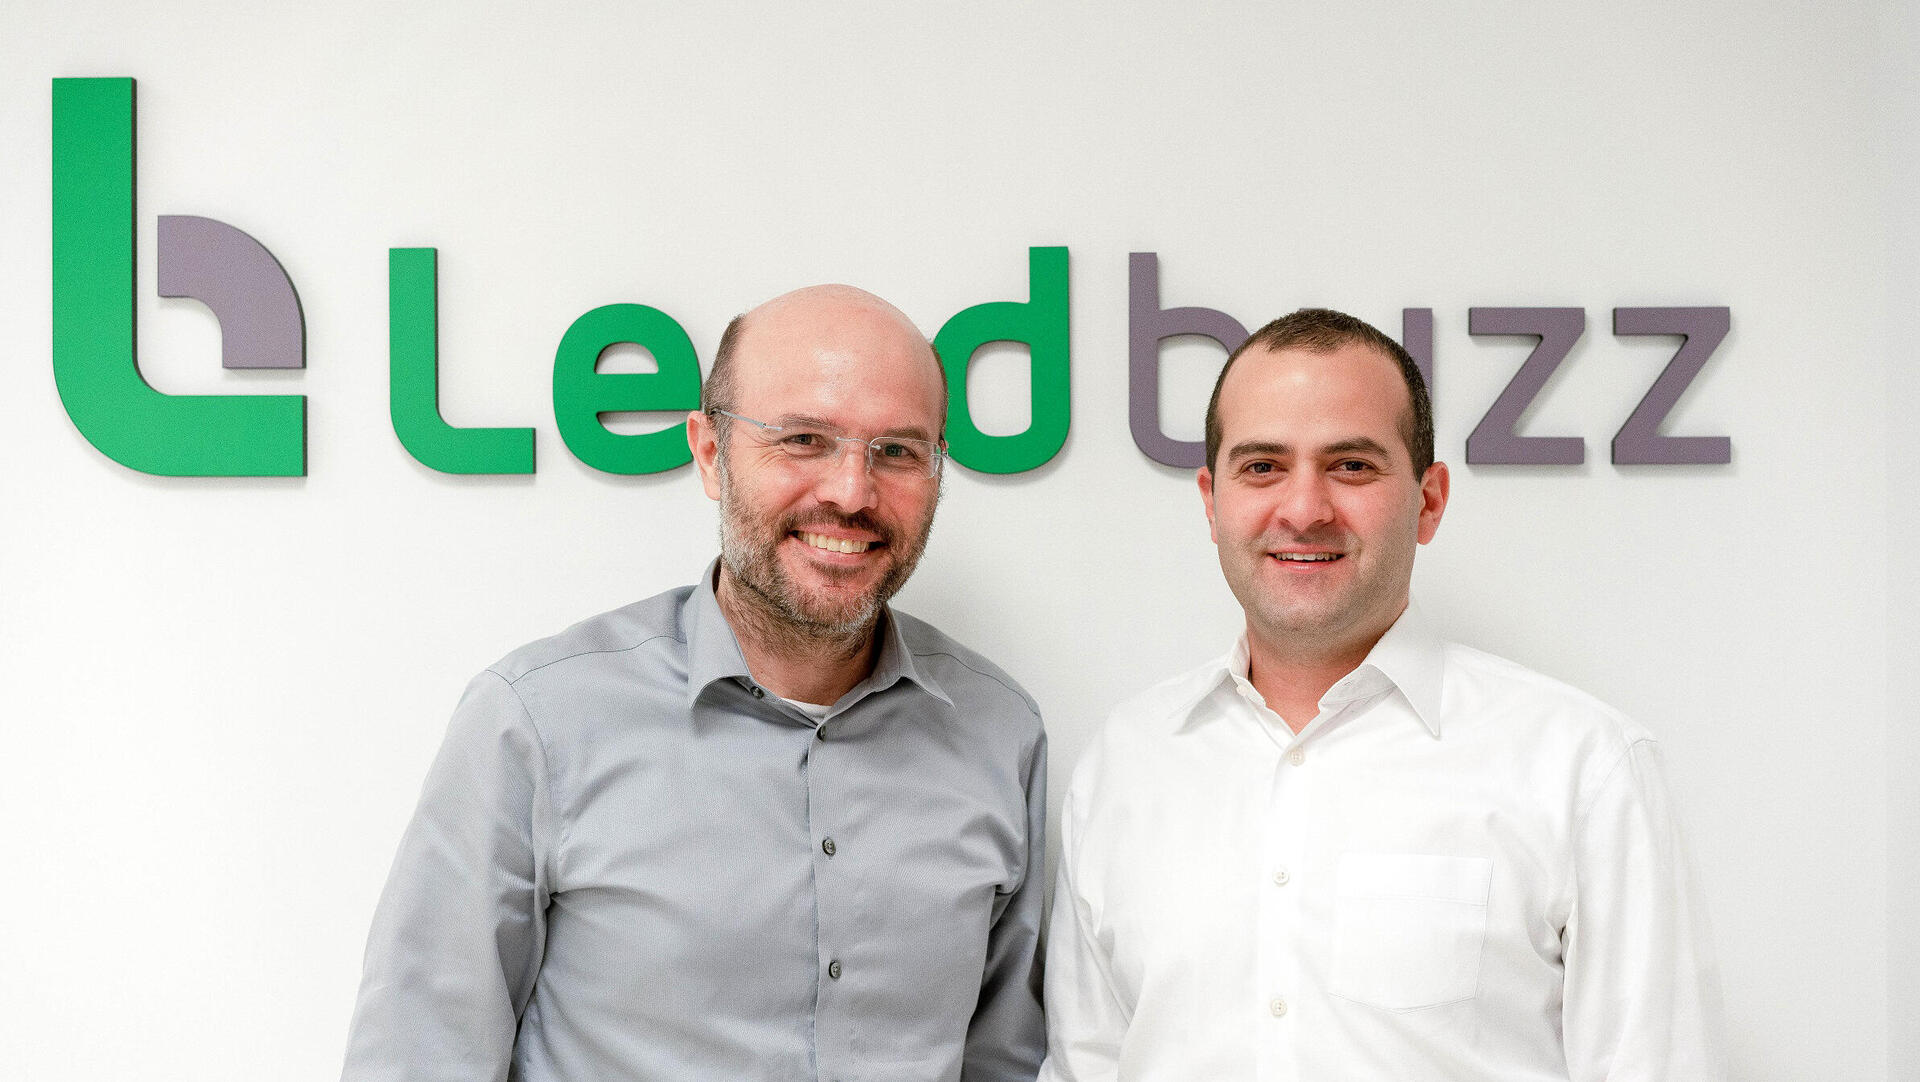 מייסדי Lendbuzz לנדבאזז אמיתי קלמר ו ד"ר דן רביב